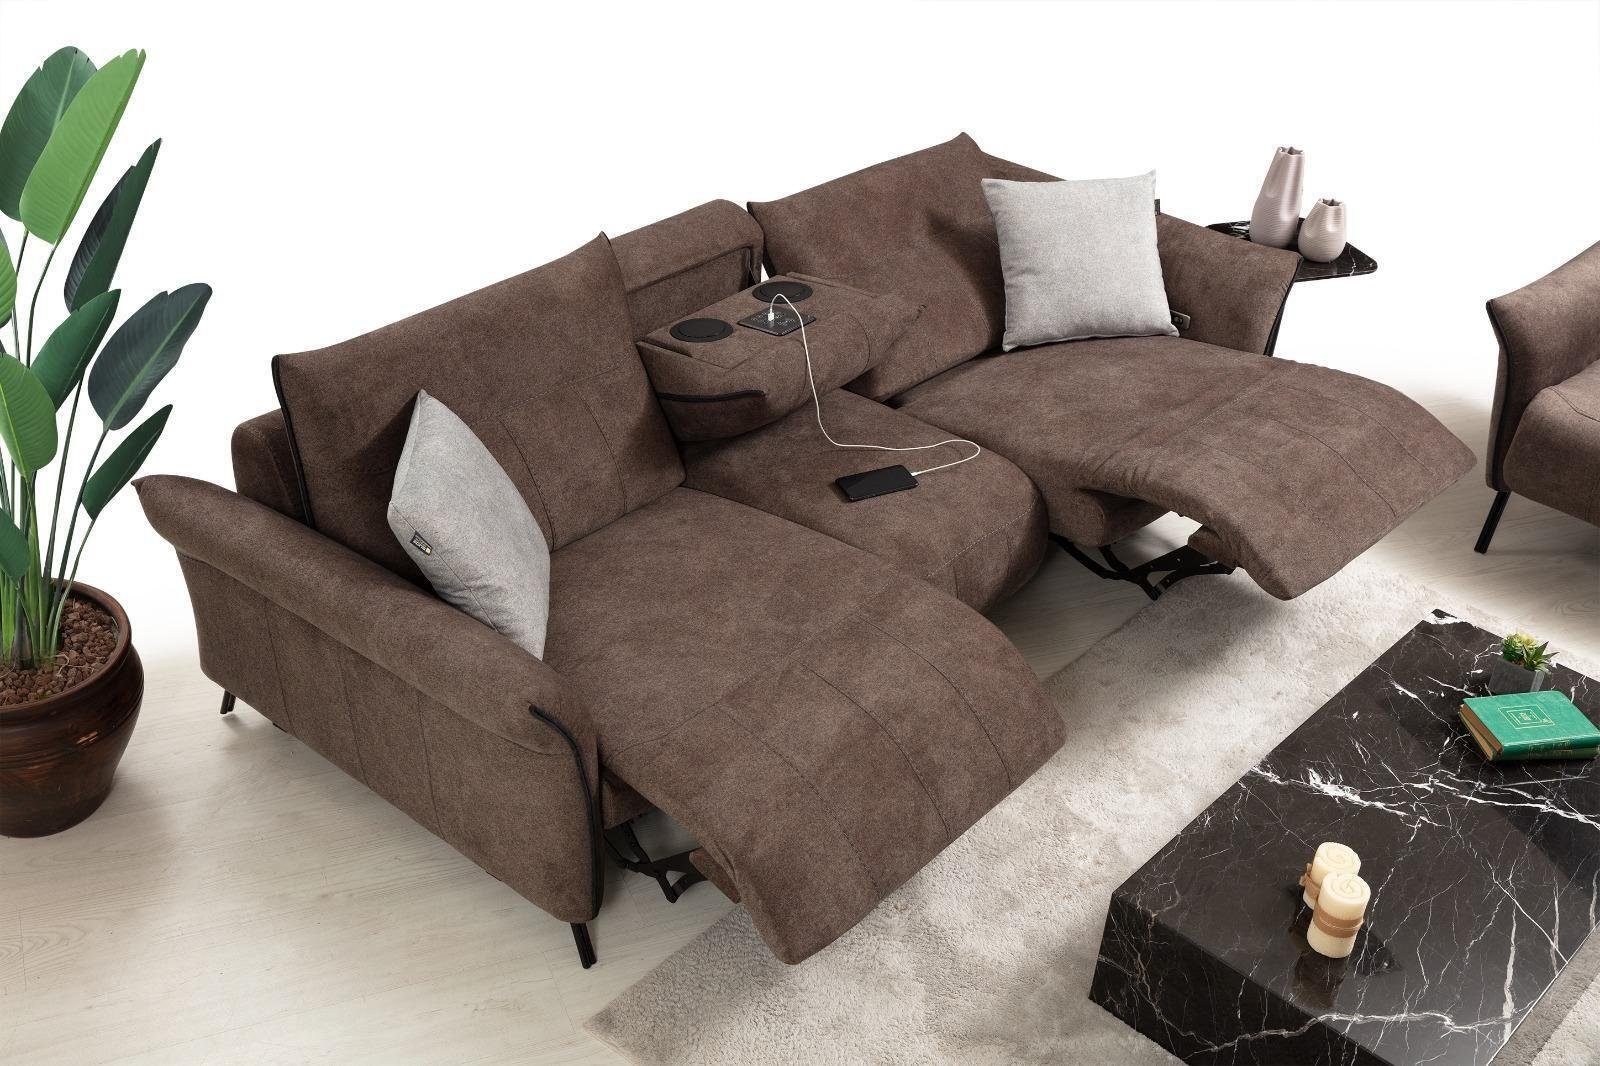 JVmoebel 4-Sitzer Luxus Sofa Couch Wohnzimmer Viersitzer Polstersofa Modern, 1 Teile, Made in Europa